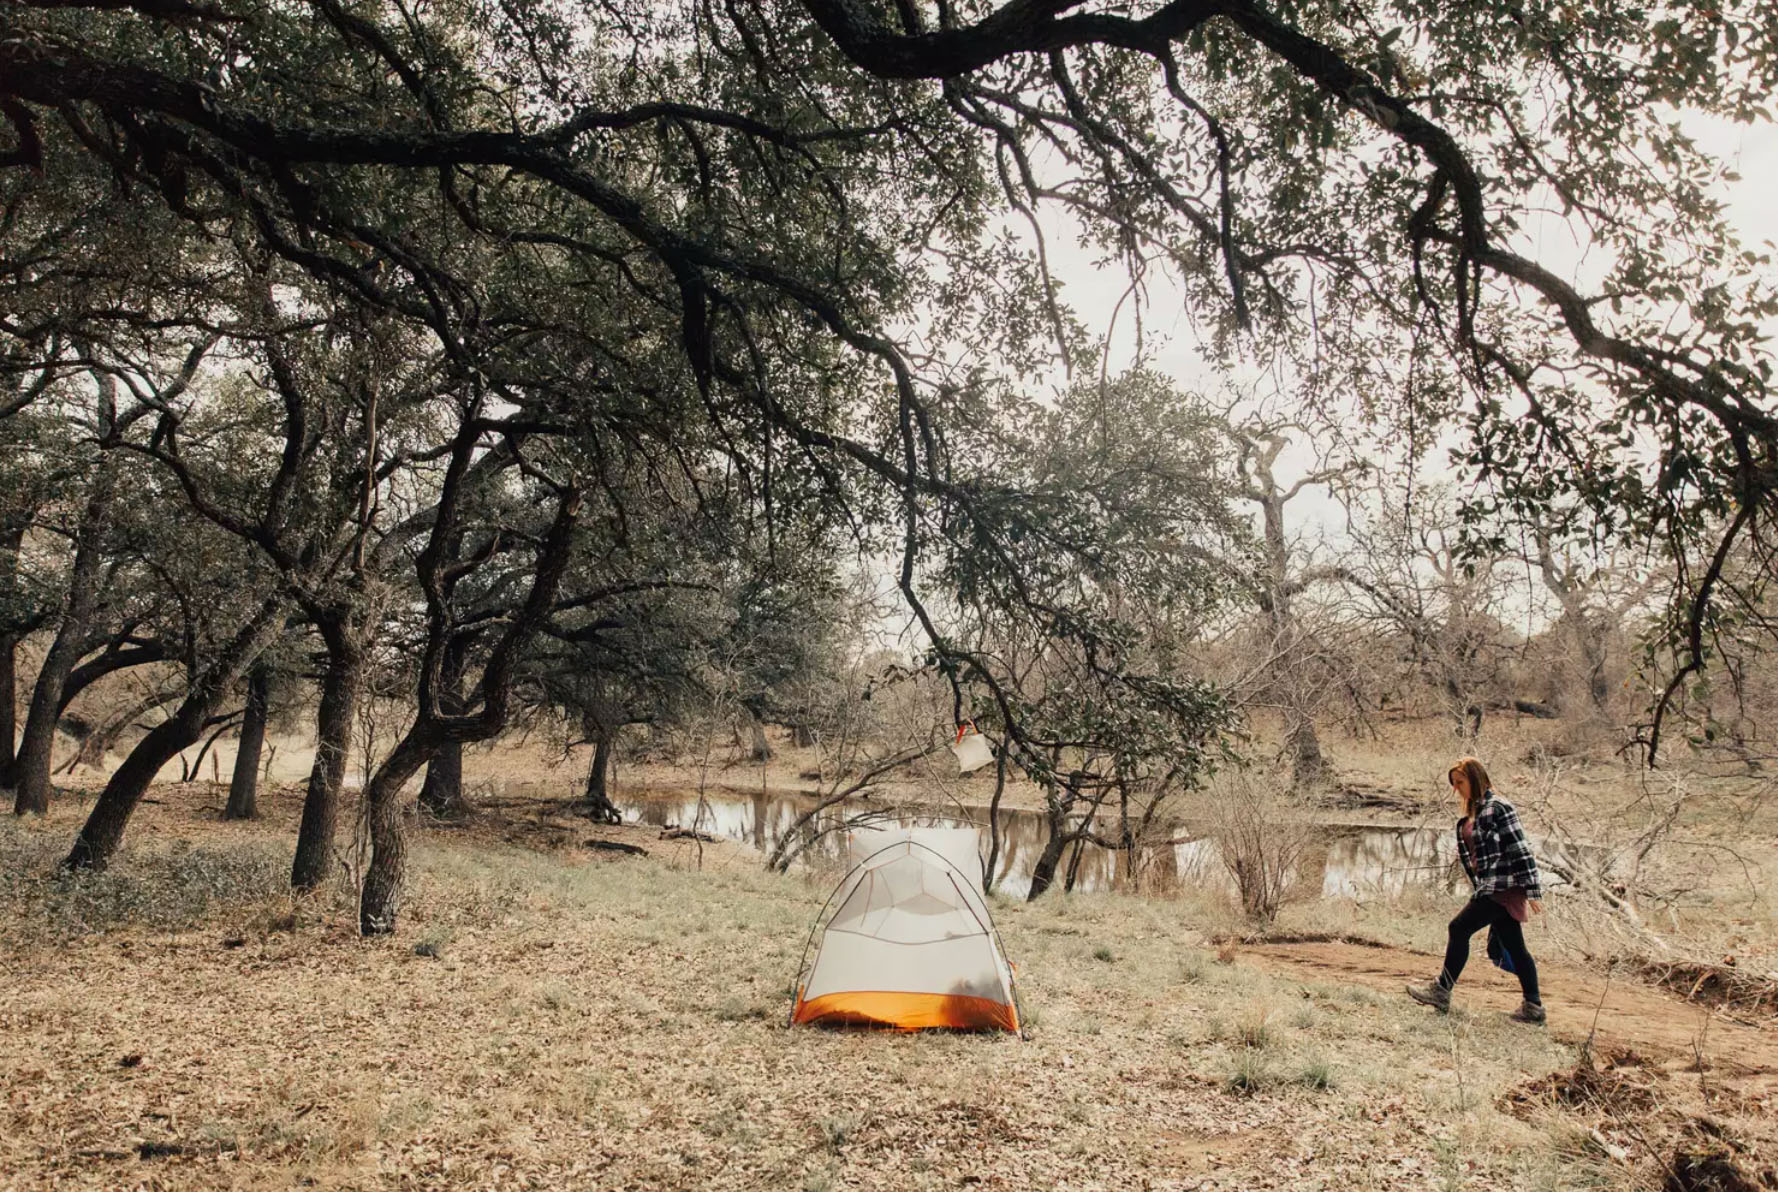 Aat de Ranch biedt praktisch gratis kamperen in Texas